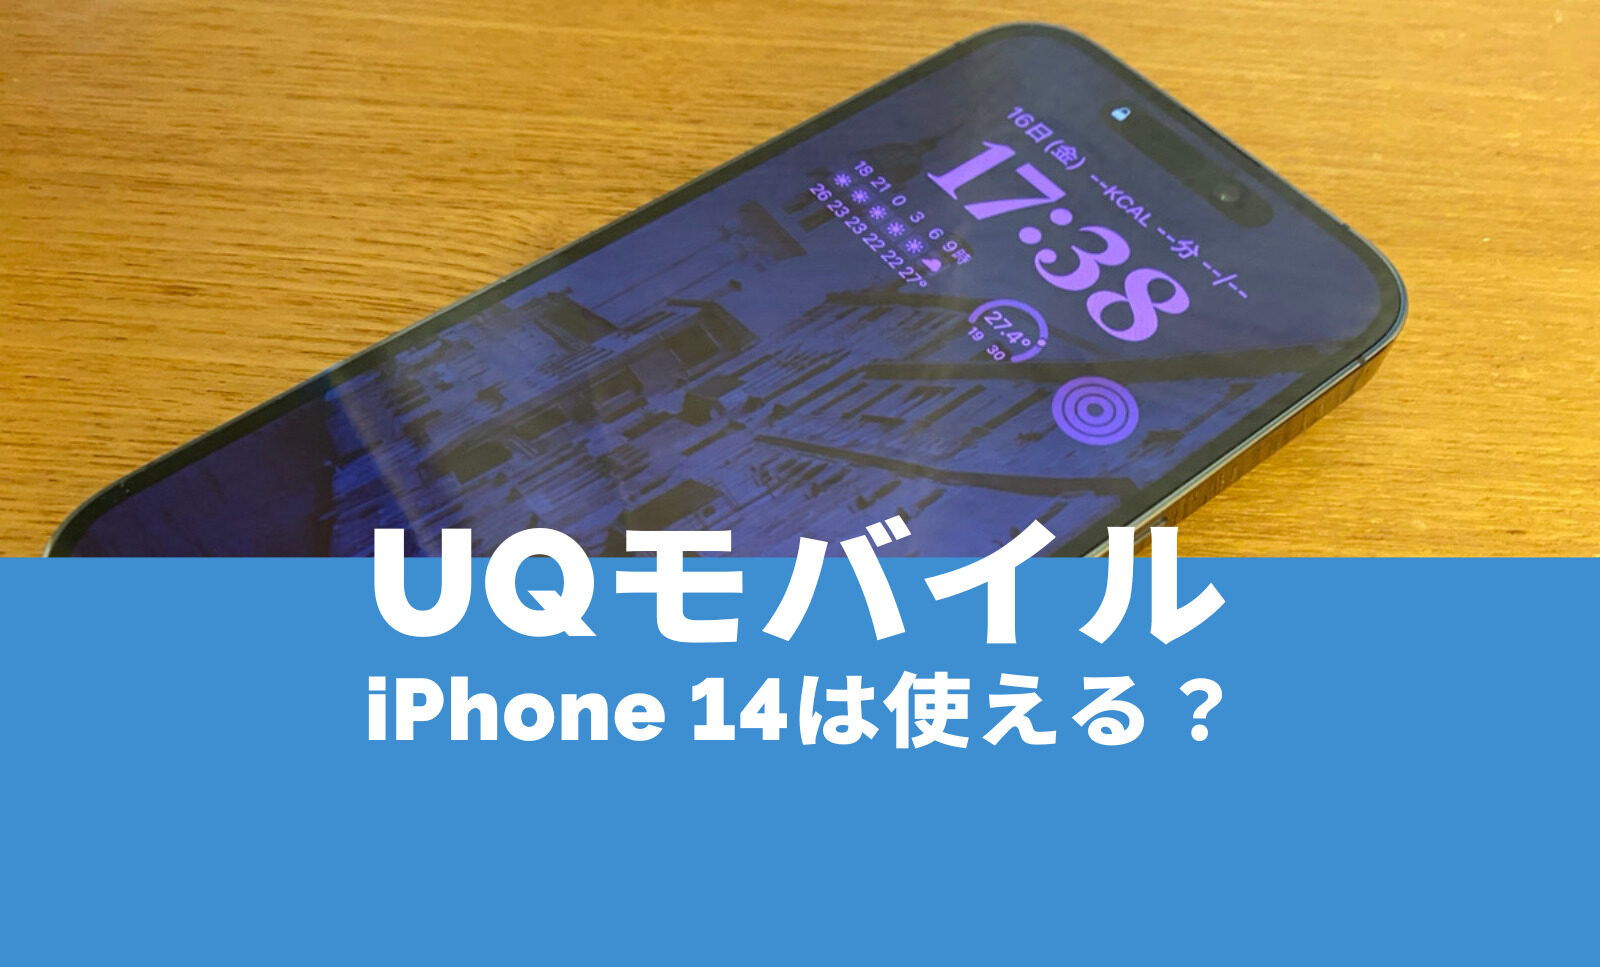 UQモバイルでiPhone 14は対応&使える？アイフォン14のセット販売は行われる？のサムネイル画像